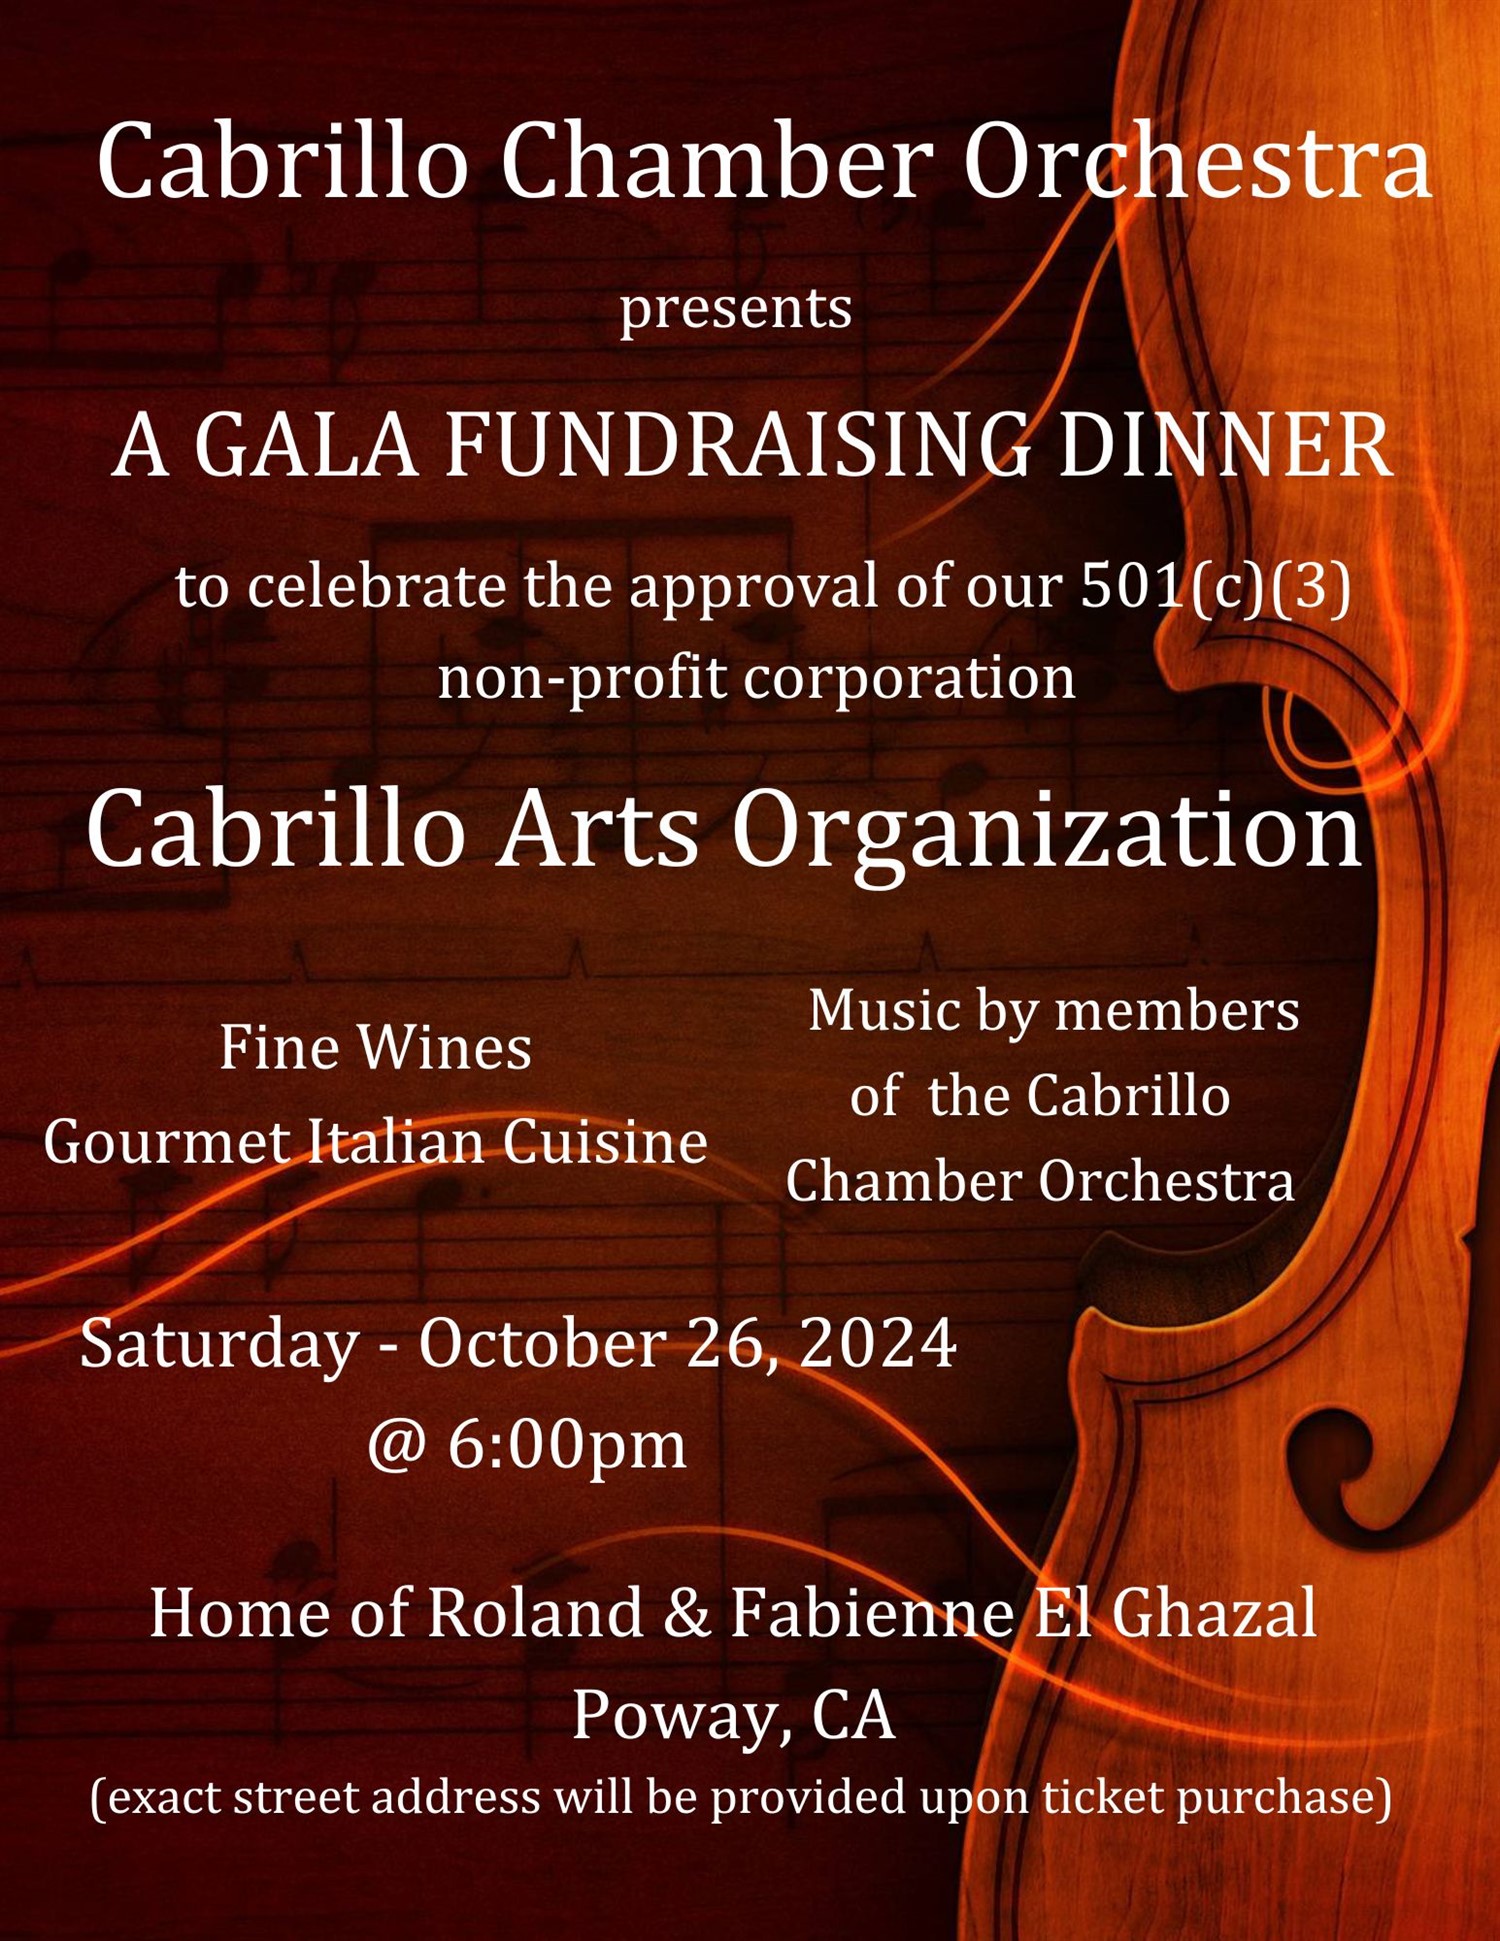 Cabrillo Arts Organization - Fundraiser Dinner  on oct. 26, 18:00@Home of Roland & Fabienne El Ghazal - Compra entradas y obtén información enCabrillo Chamber Orchestra 